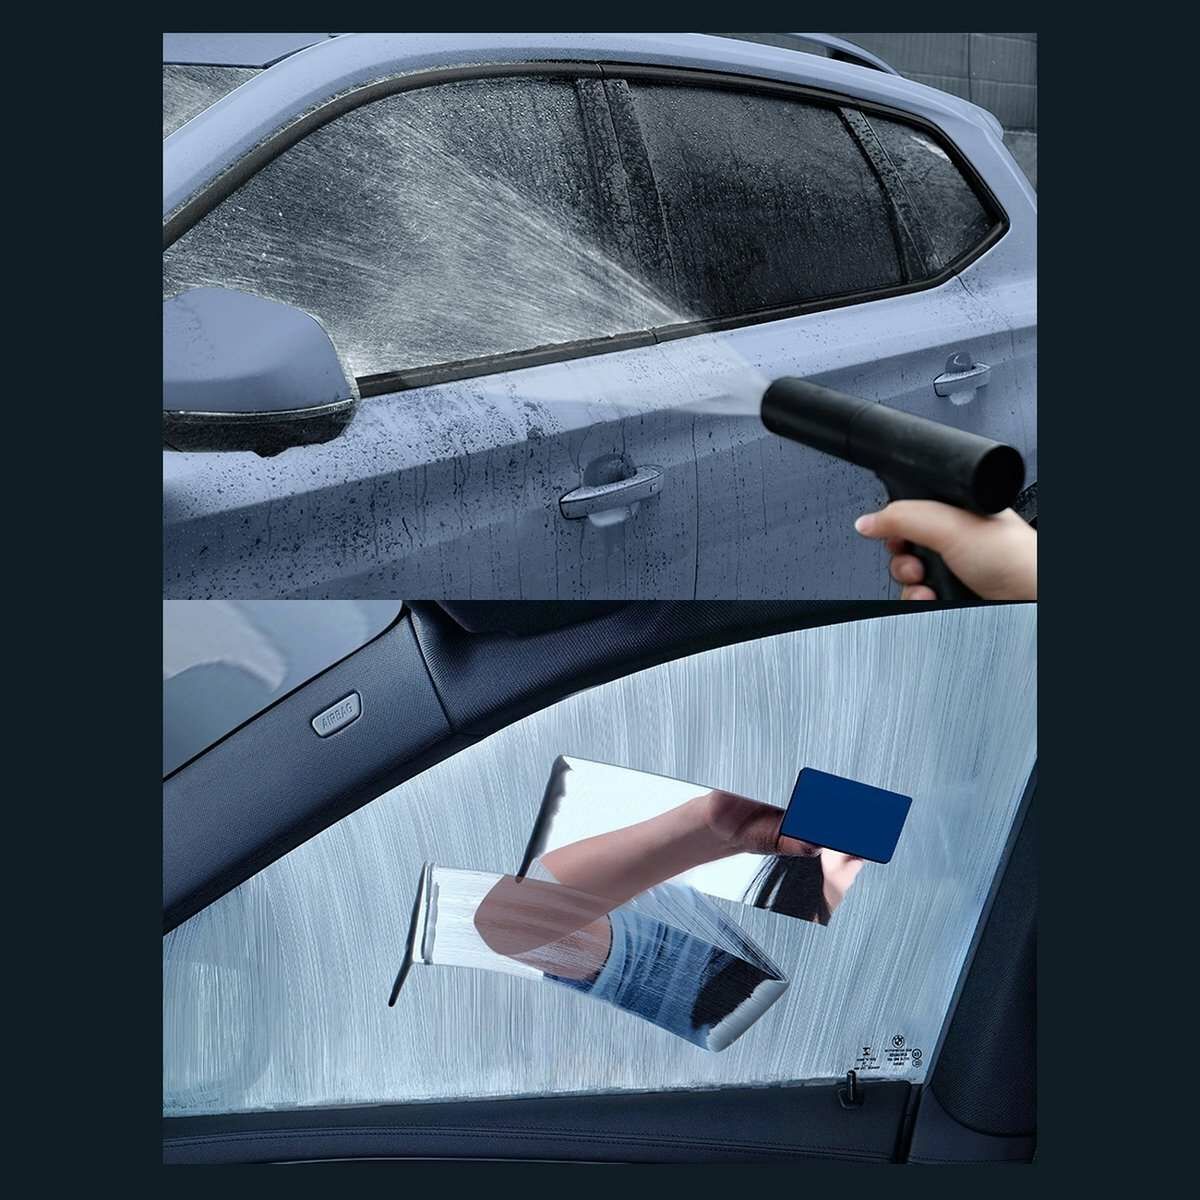 Kép 14/23 - Baseus autós kiegészítő, Auto-care ablak tisztító folyadék, zsíros foltok eltávolítására, 200ml, fehér (CRYH020002)